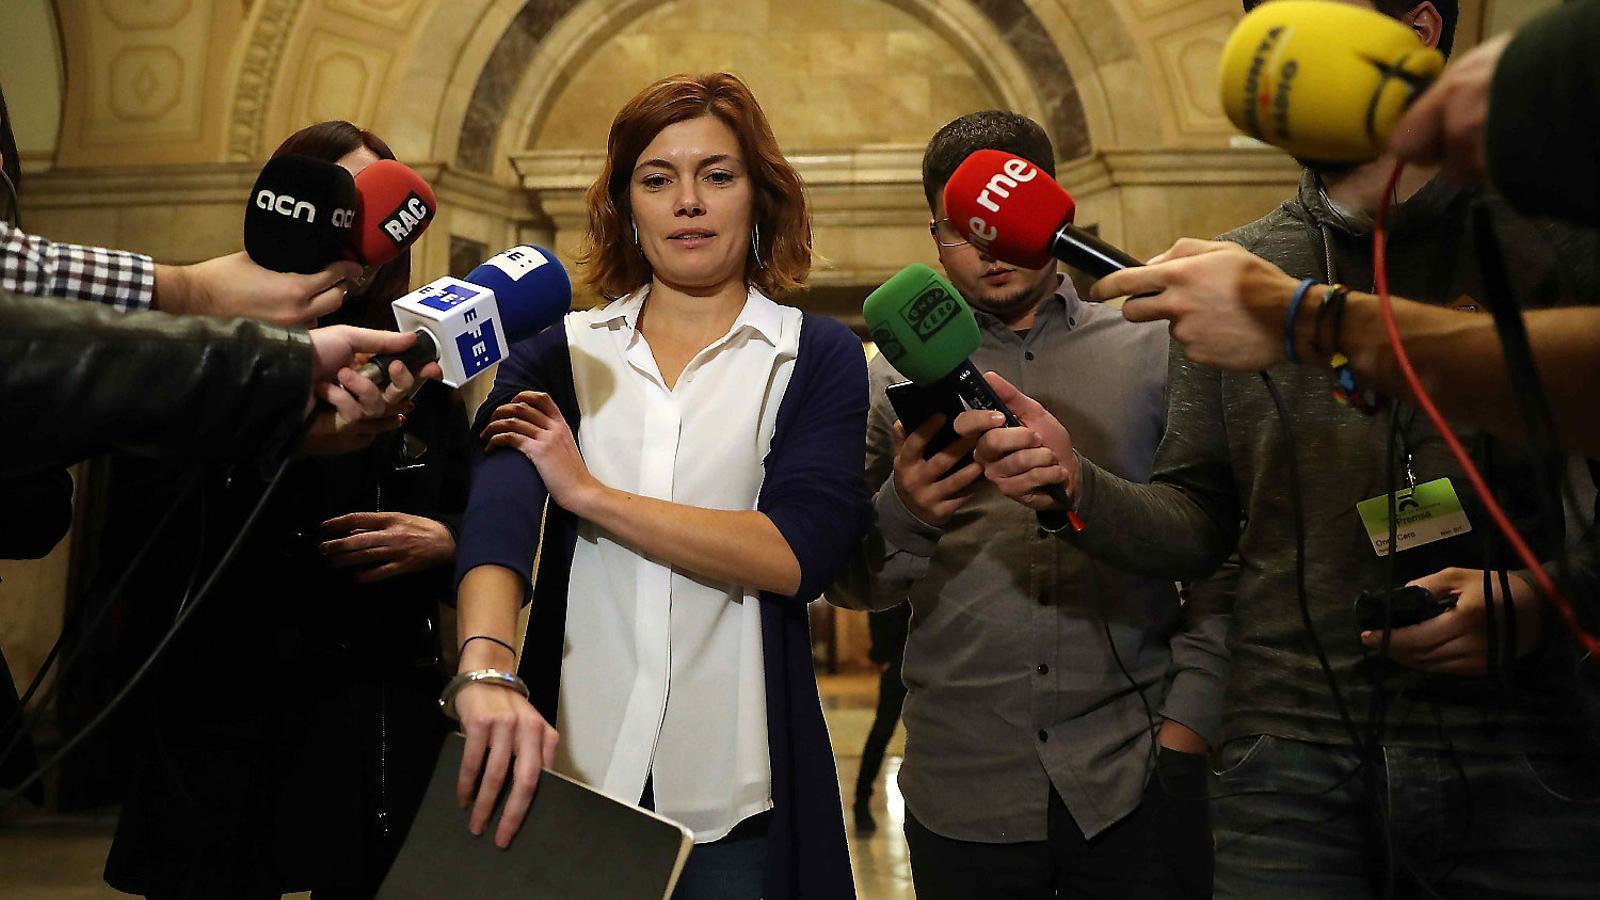 La portaveu de Catalunya en Comú Podem, Elisenda Alamany, atenent els mitjans al Parlament en una imatge d’arxiu. / T.ALBIR/EFE